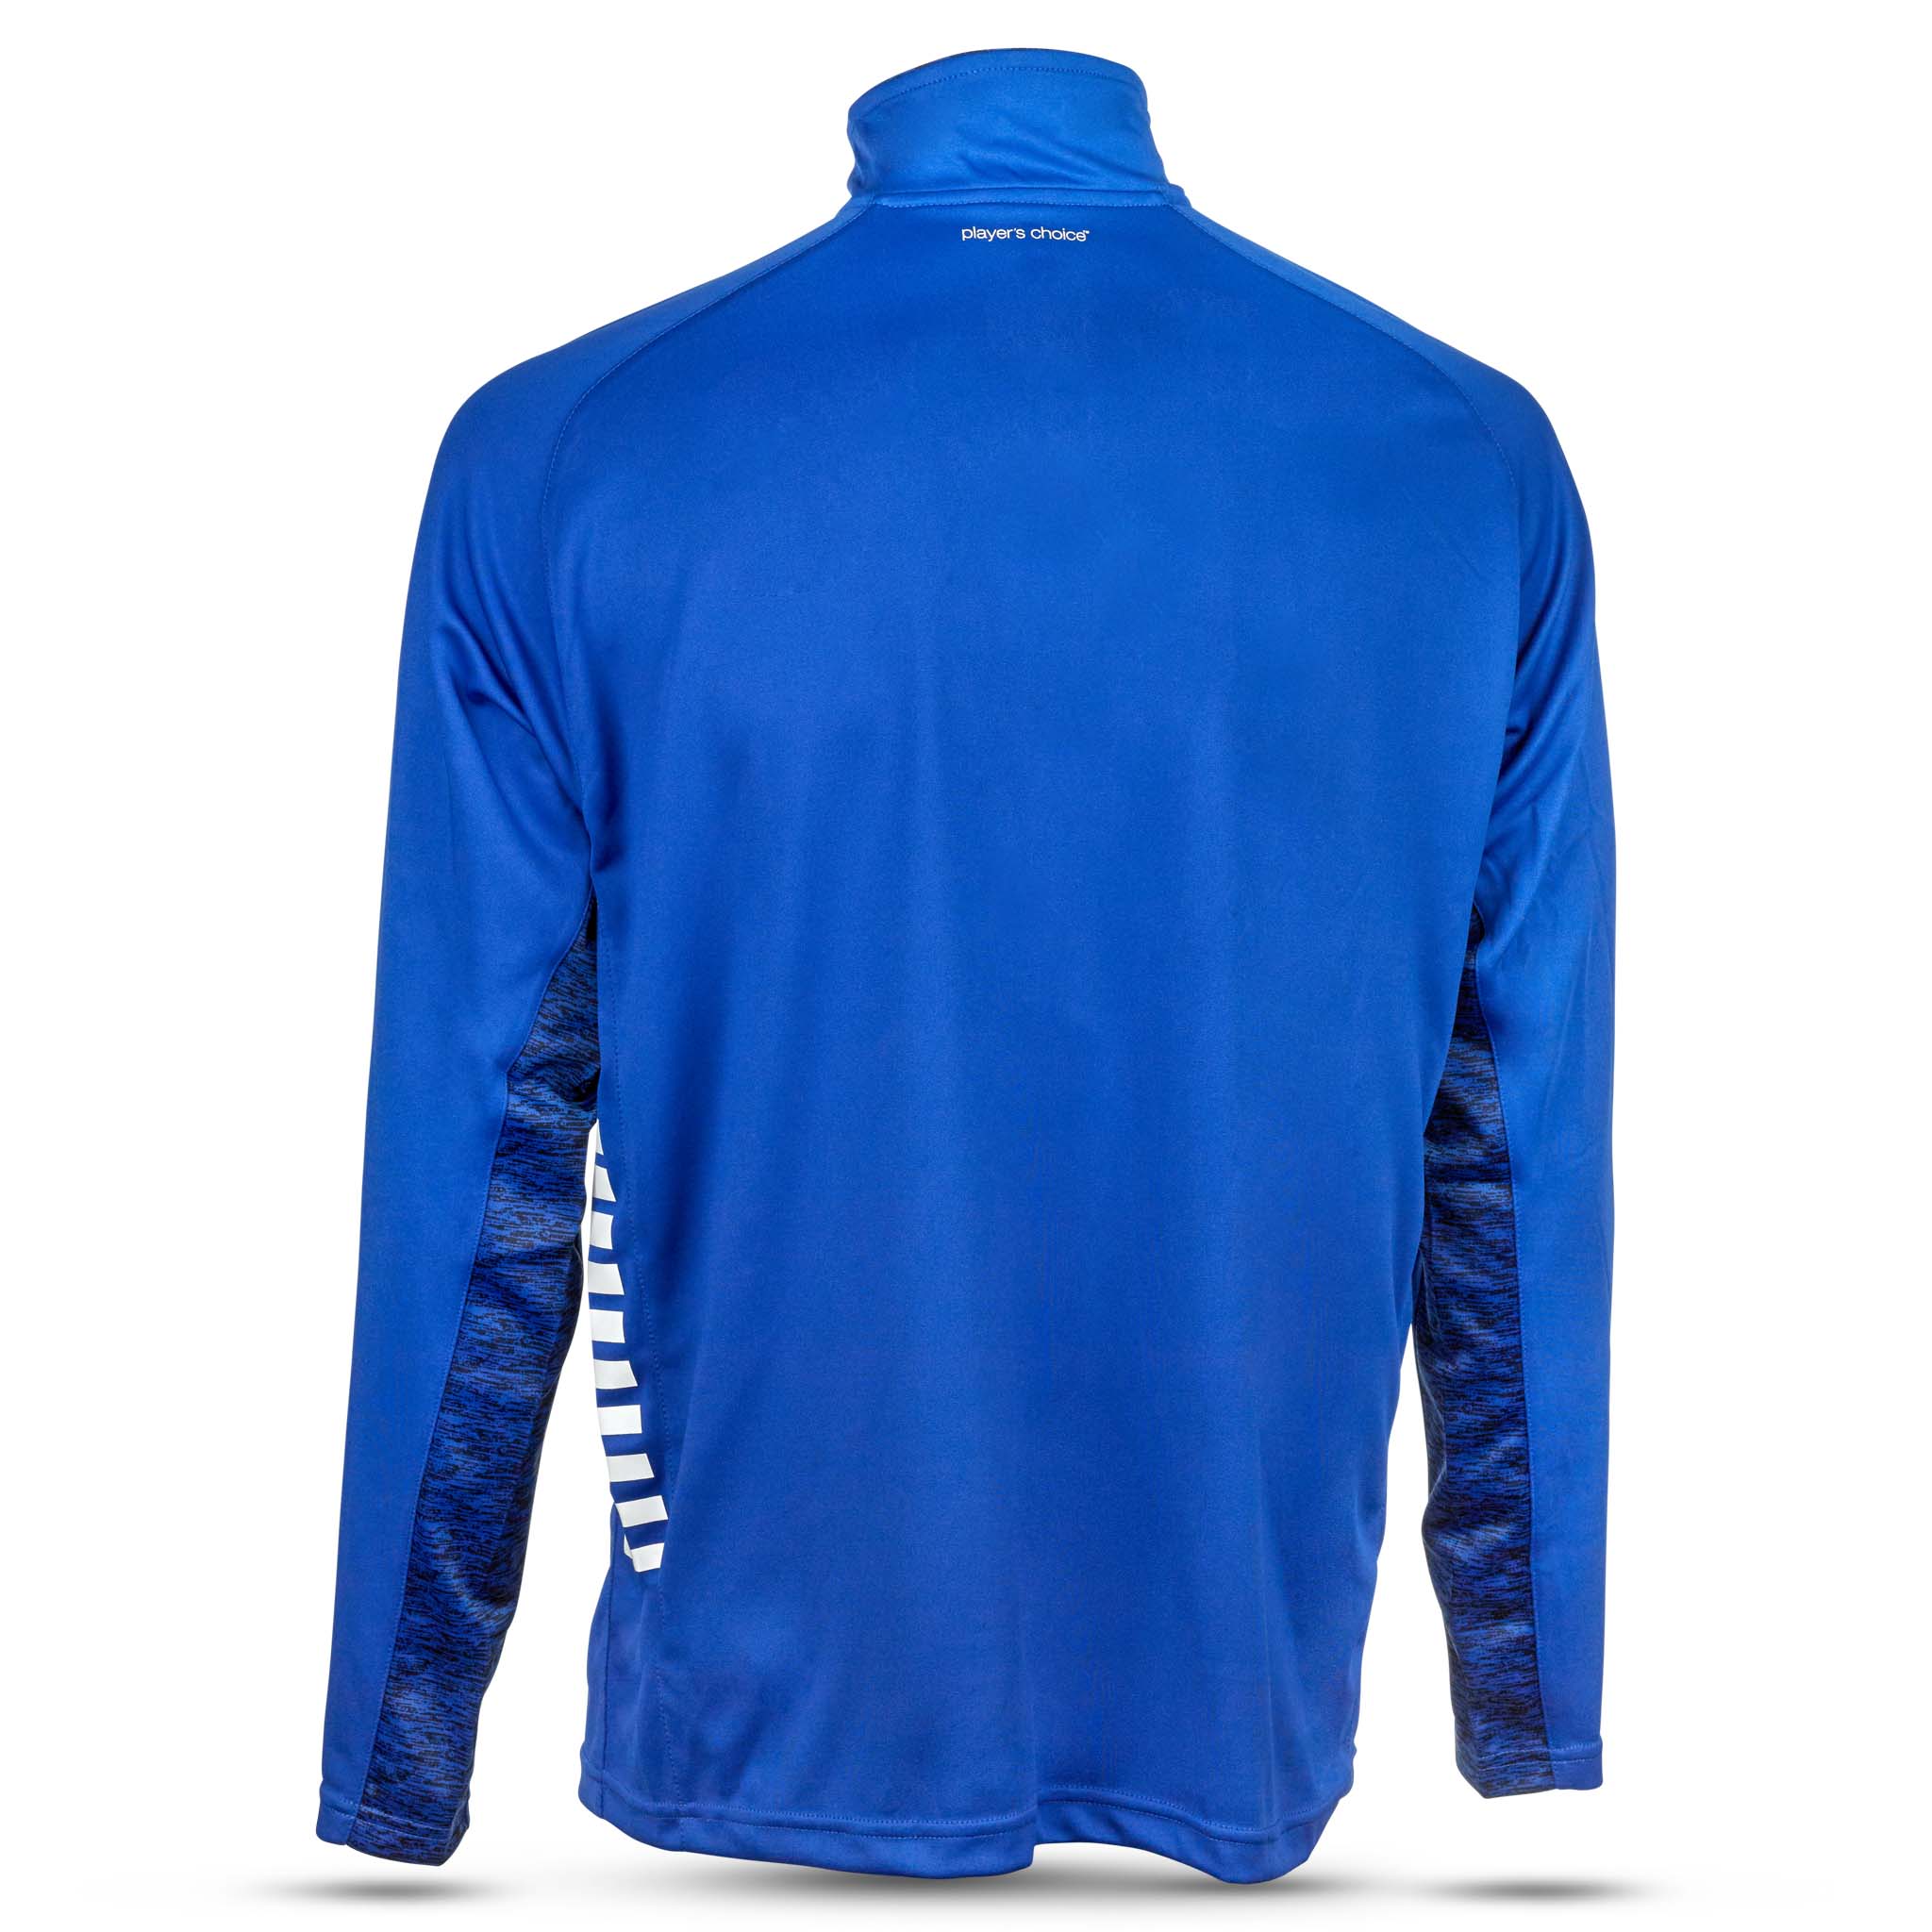 Spain Träning sweatshirt 1/2 zip - Barn #färg_blå